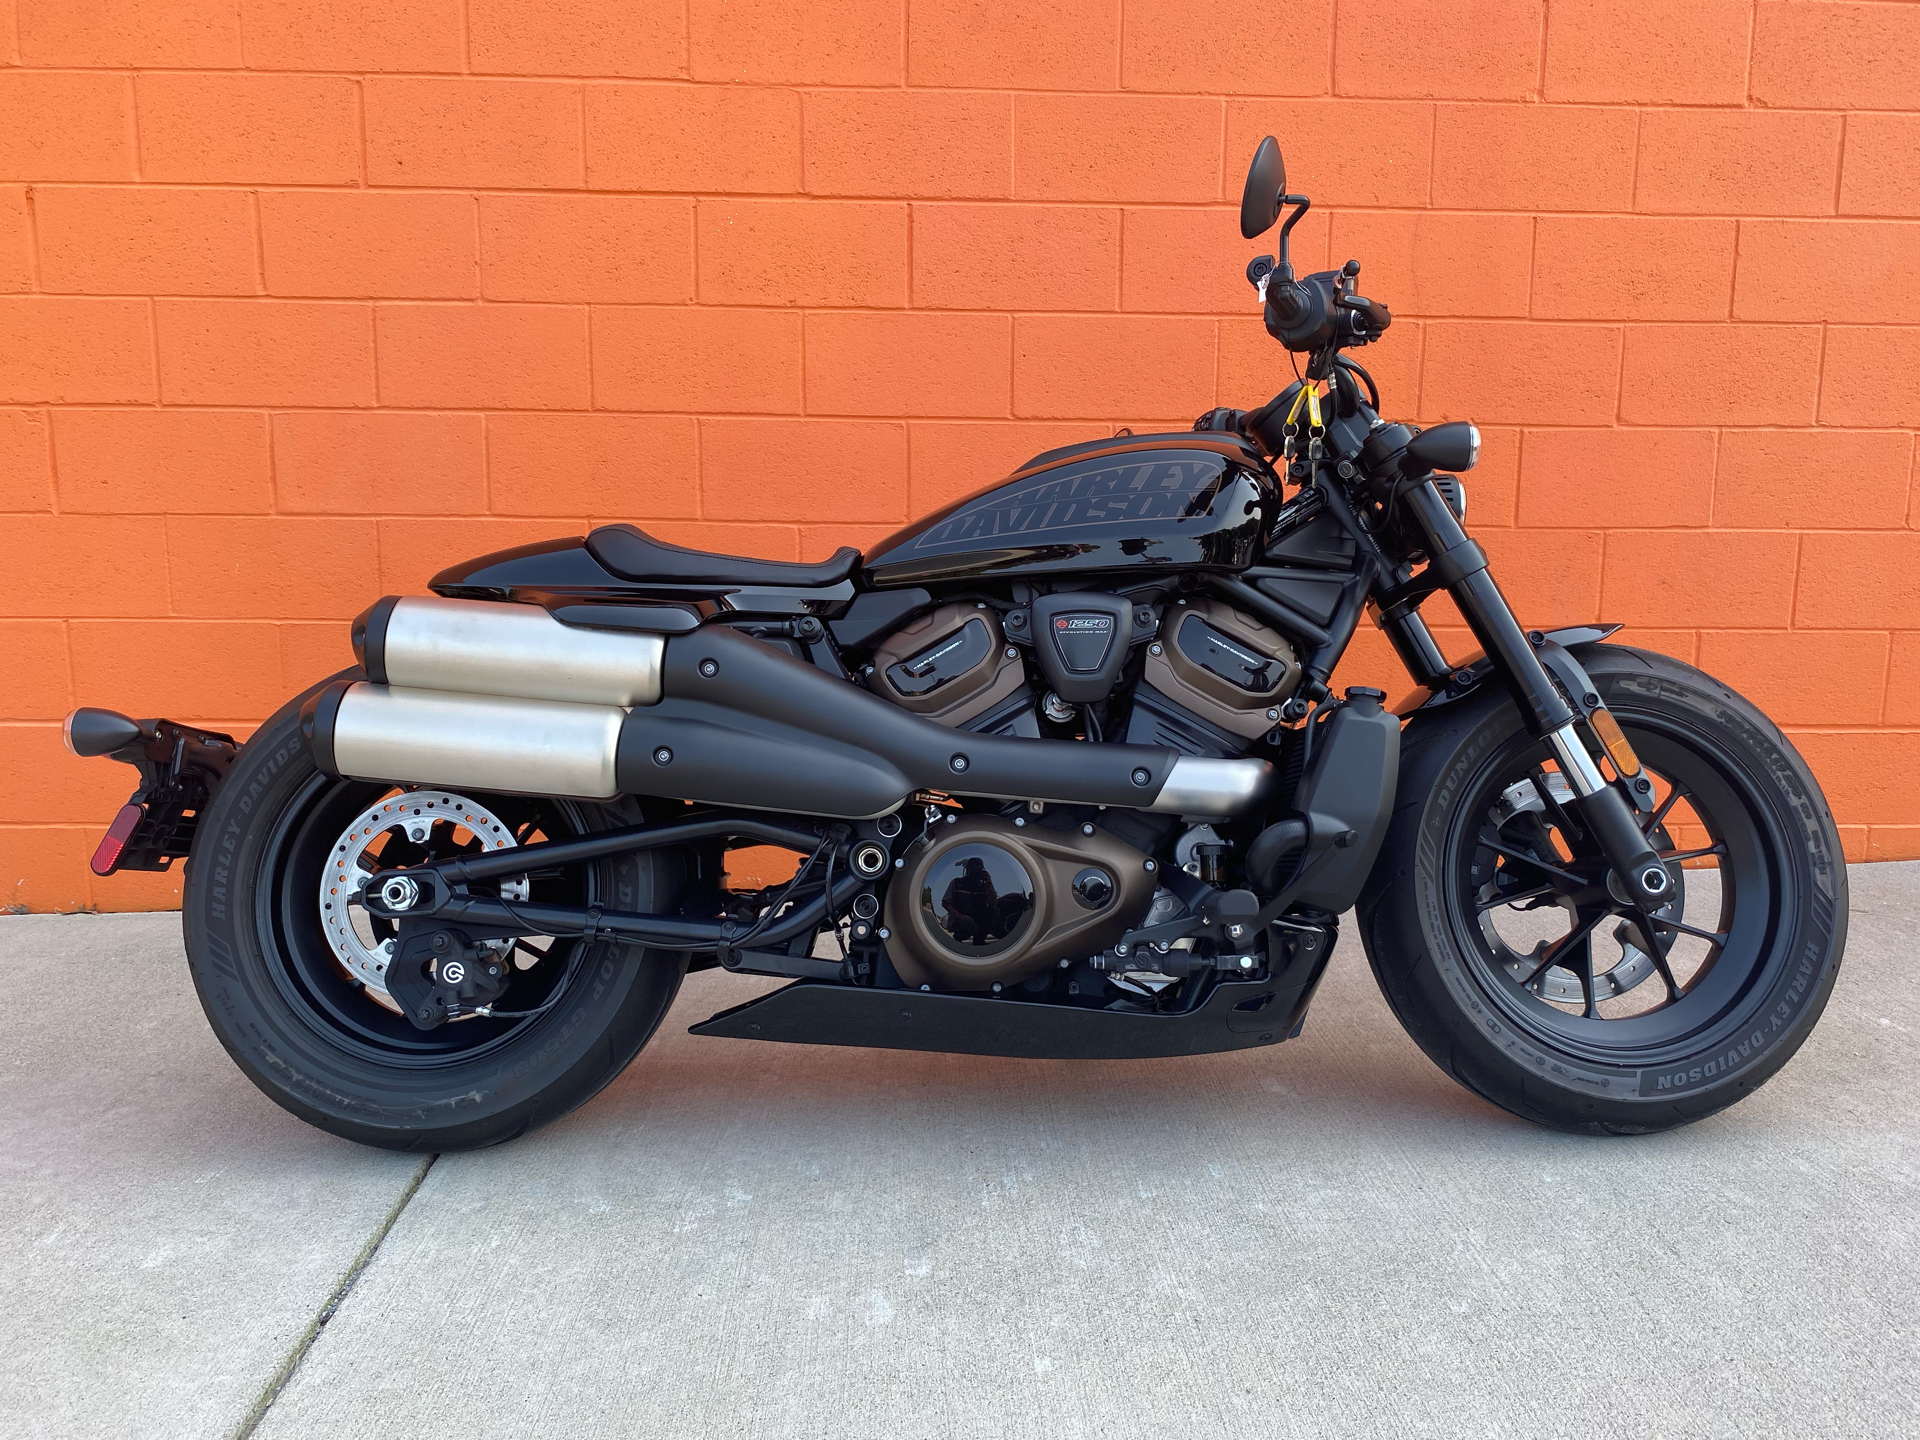 2021 Harley-Davidson Sportster® S in Fredericksburg, Virginia - Photo 1